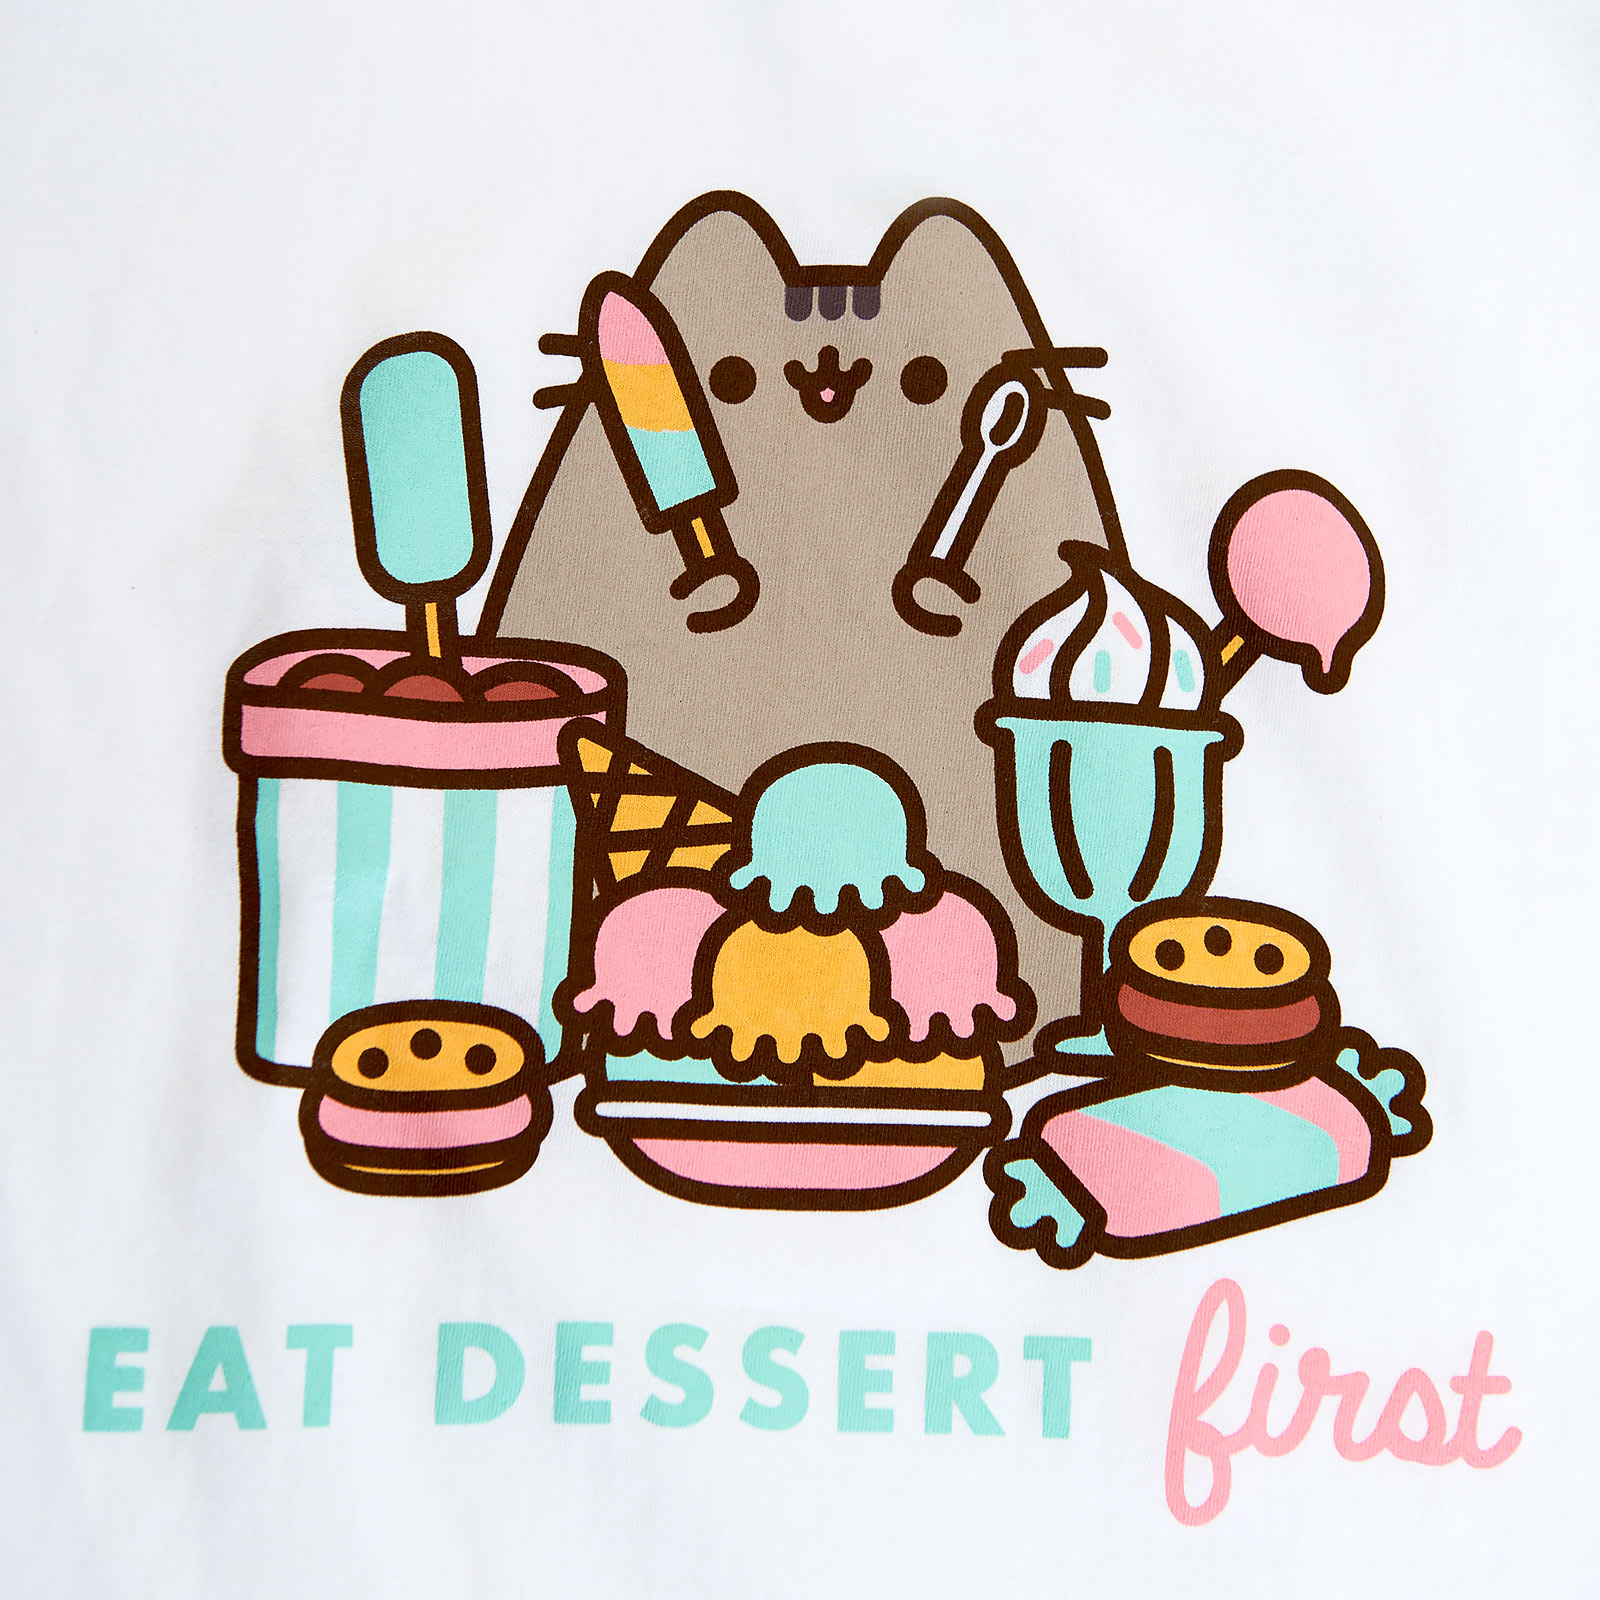 Pusheen - Eat Dessert First Women's T-Shirt white